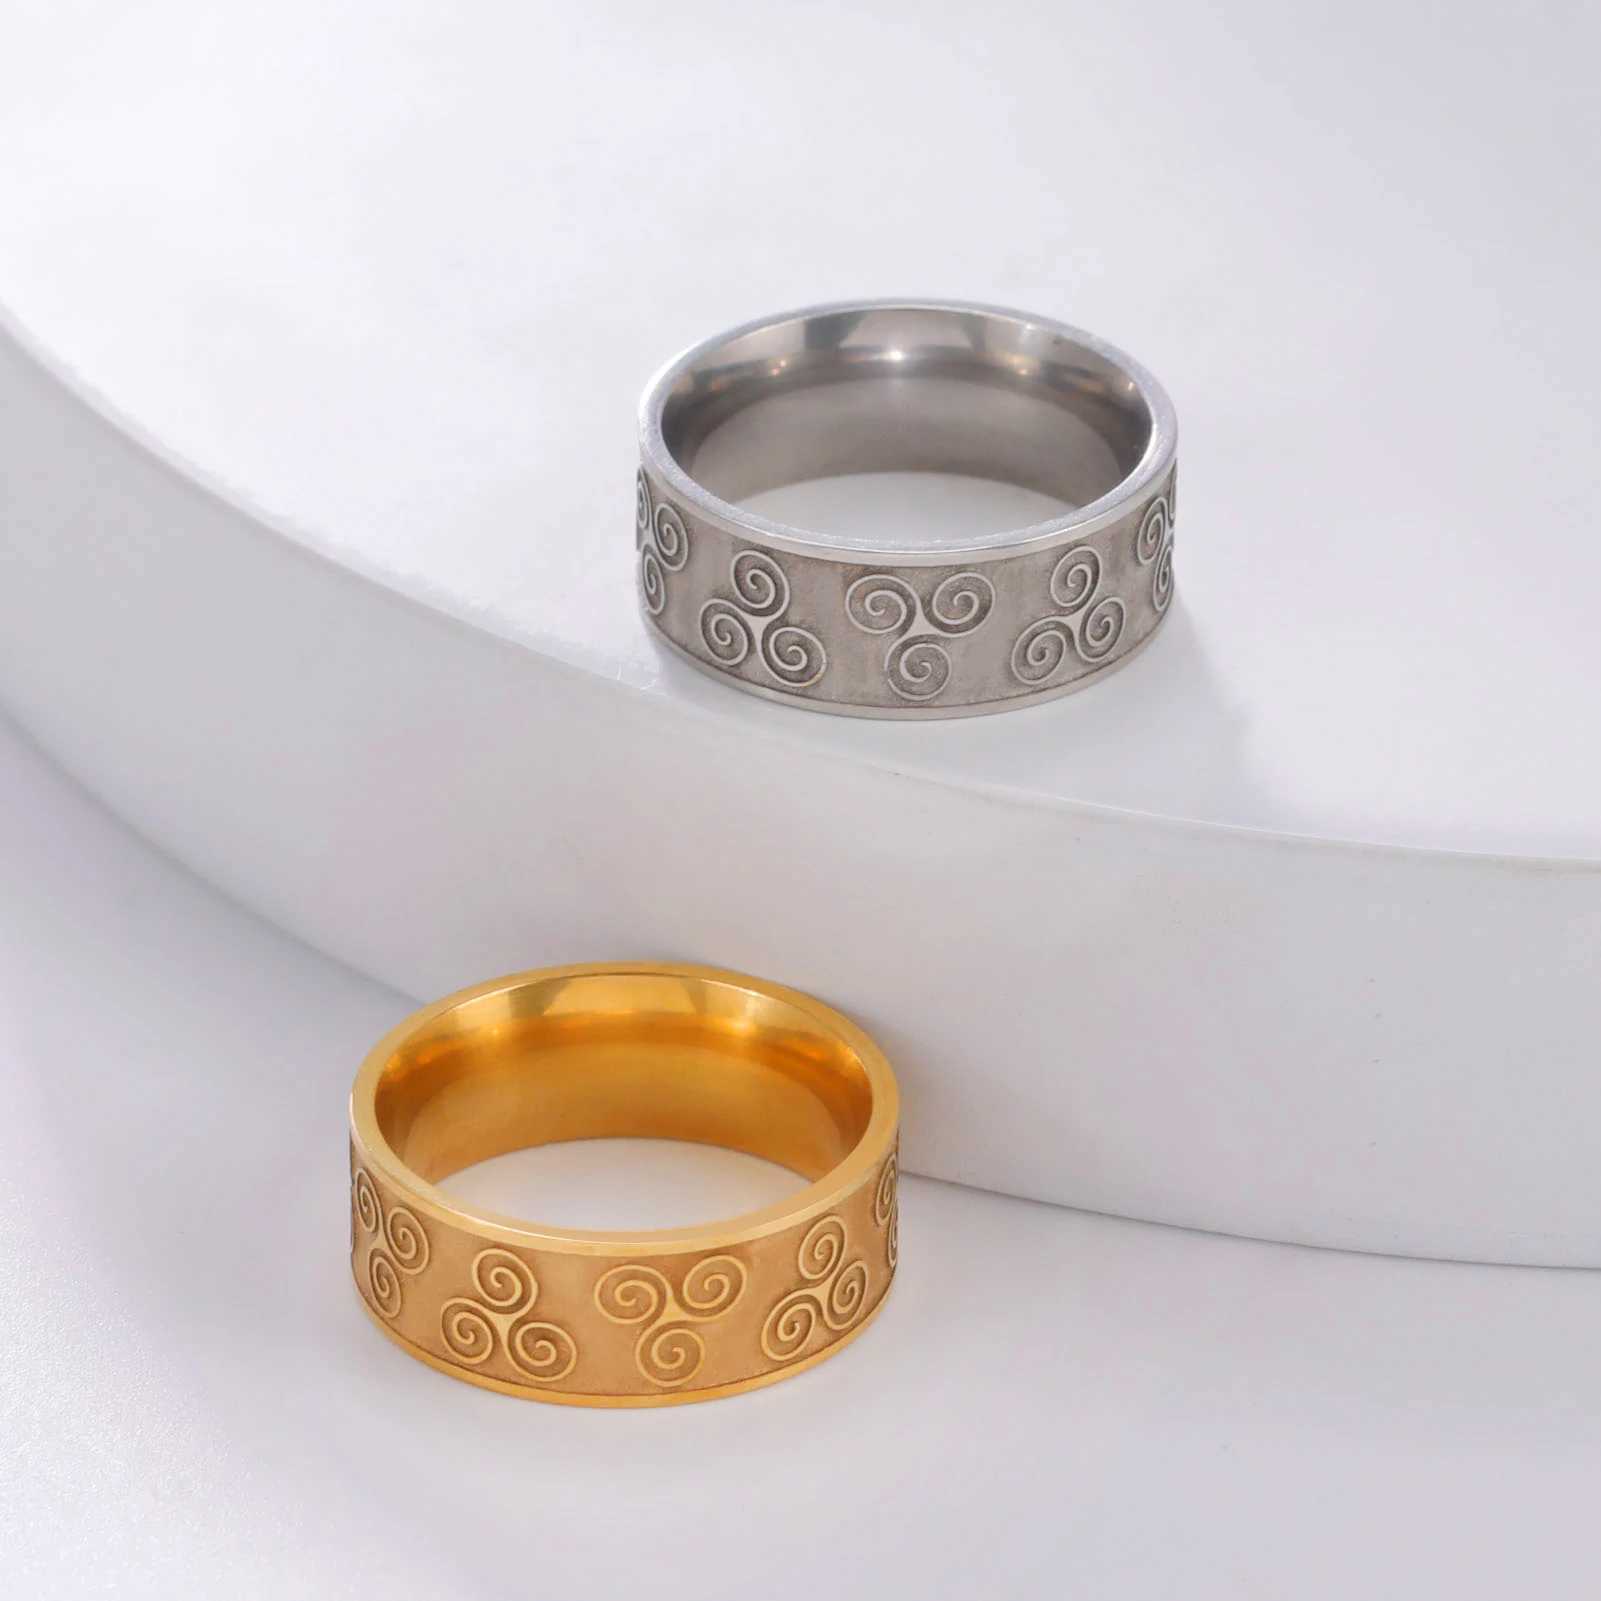 Eheringe Skyrim Ring Triskele Trisklion Edelstahl Dreifach Spiral Amulett Ringe Vintage Jewelry Geschenk für Männer Frauen Liebhaber